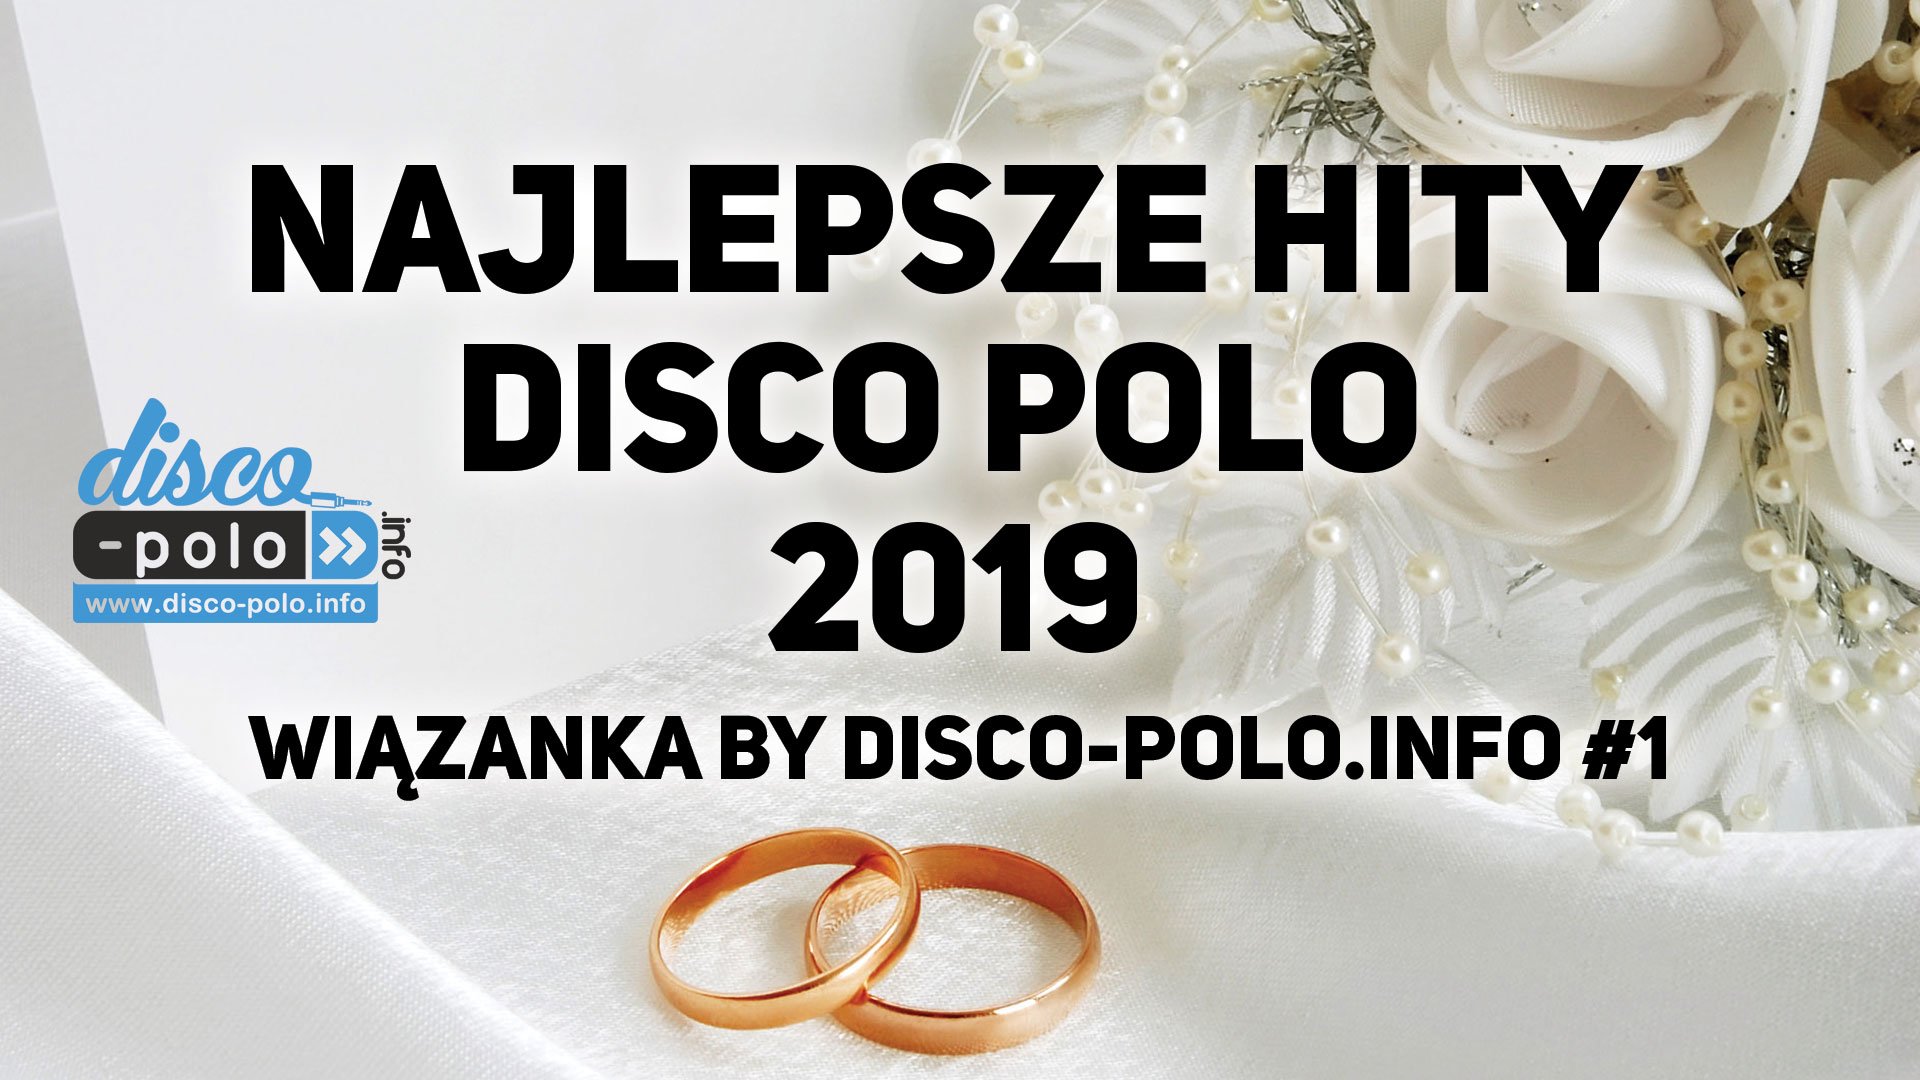 Najlepsze Hity Disco Polo 2019 - Wiązanka by Disco-Polo.info #1 dostępna!